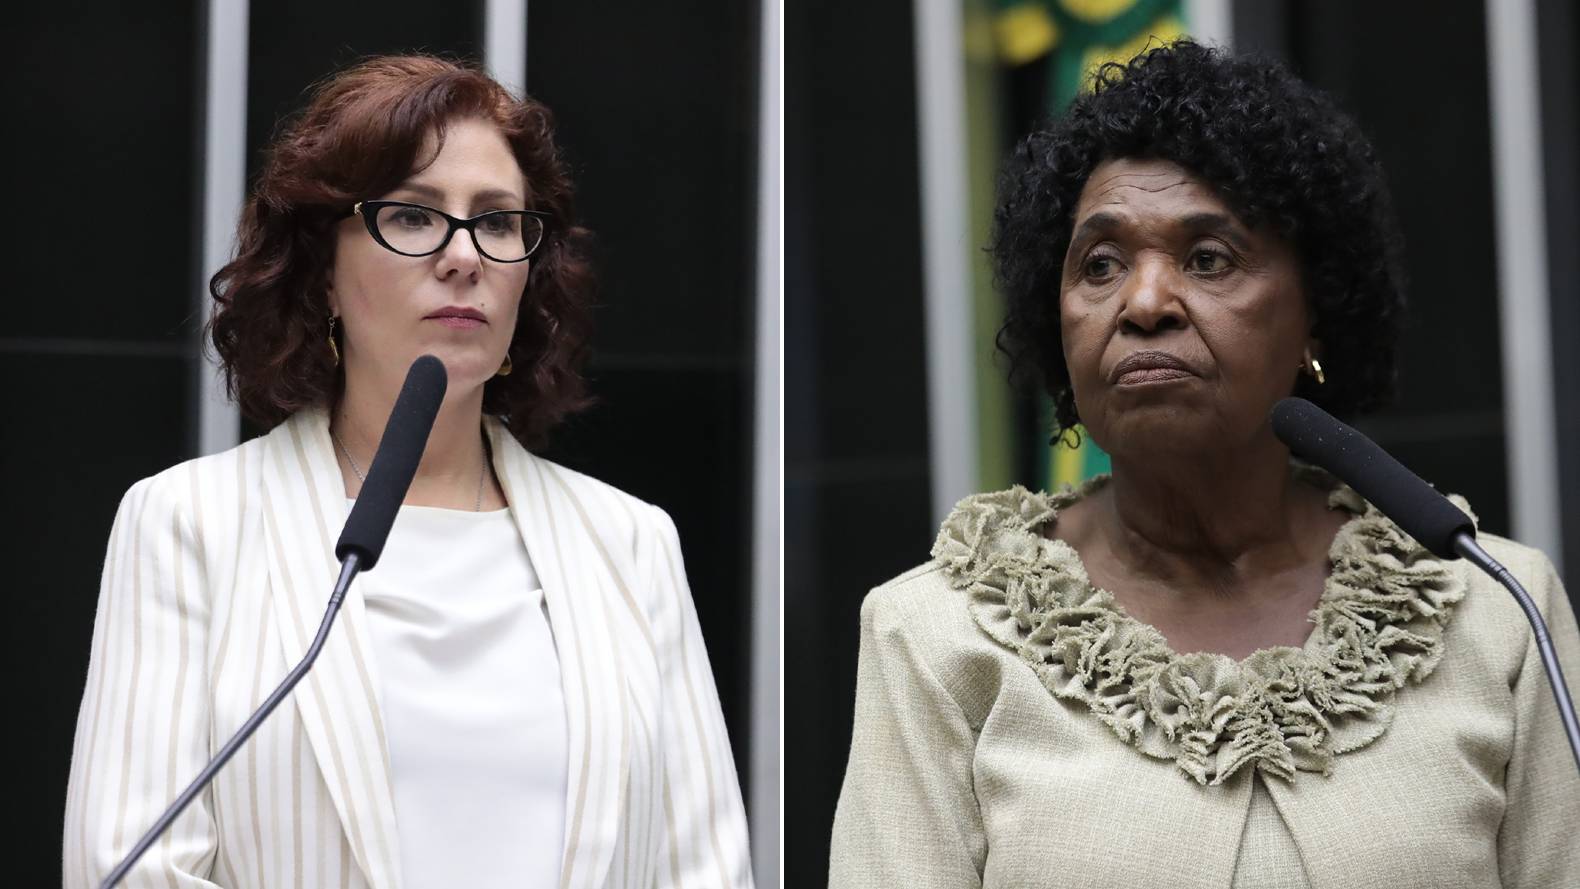 Após ser chamada de 'Chica da Silva', Benedita vai processar Zambelli por racismo